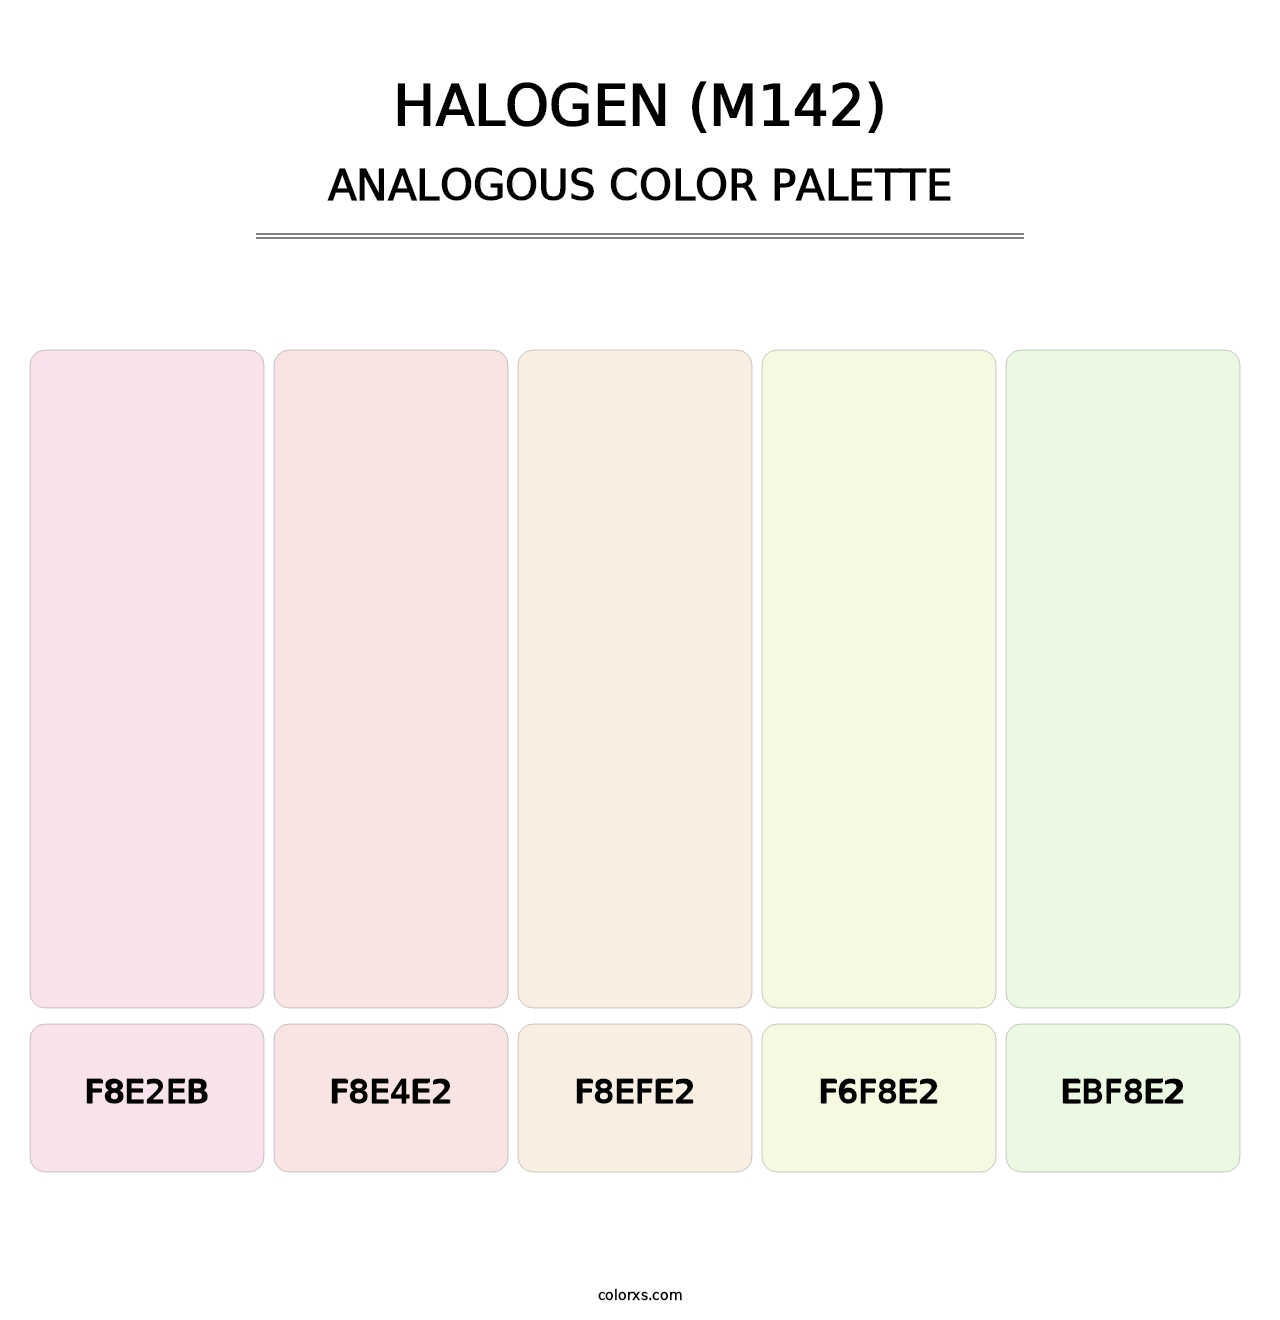 Halogen (M142) - Analogous Color Palette